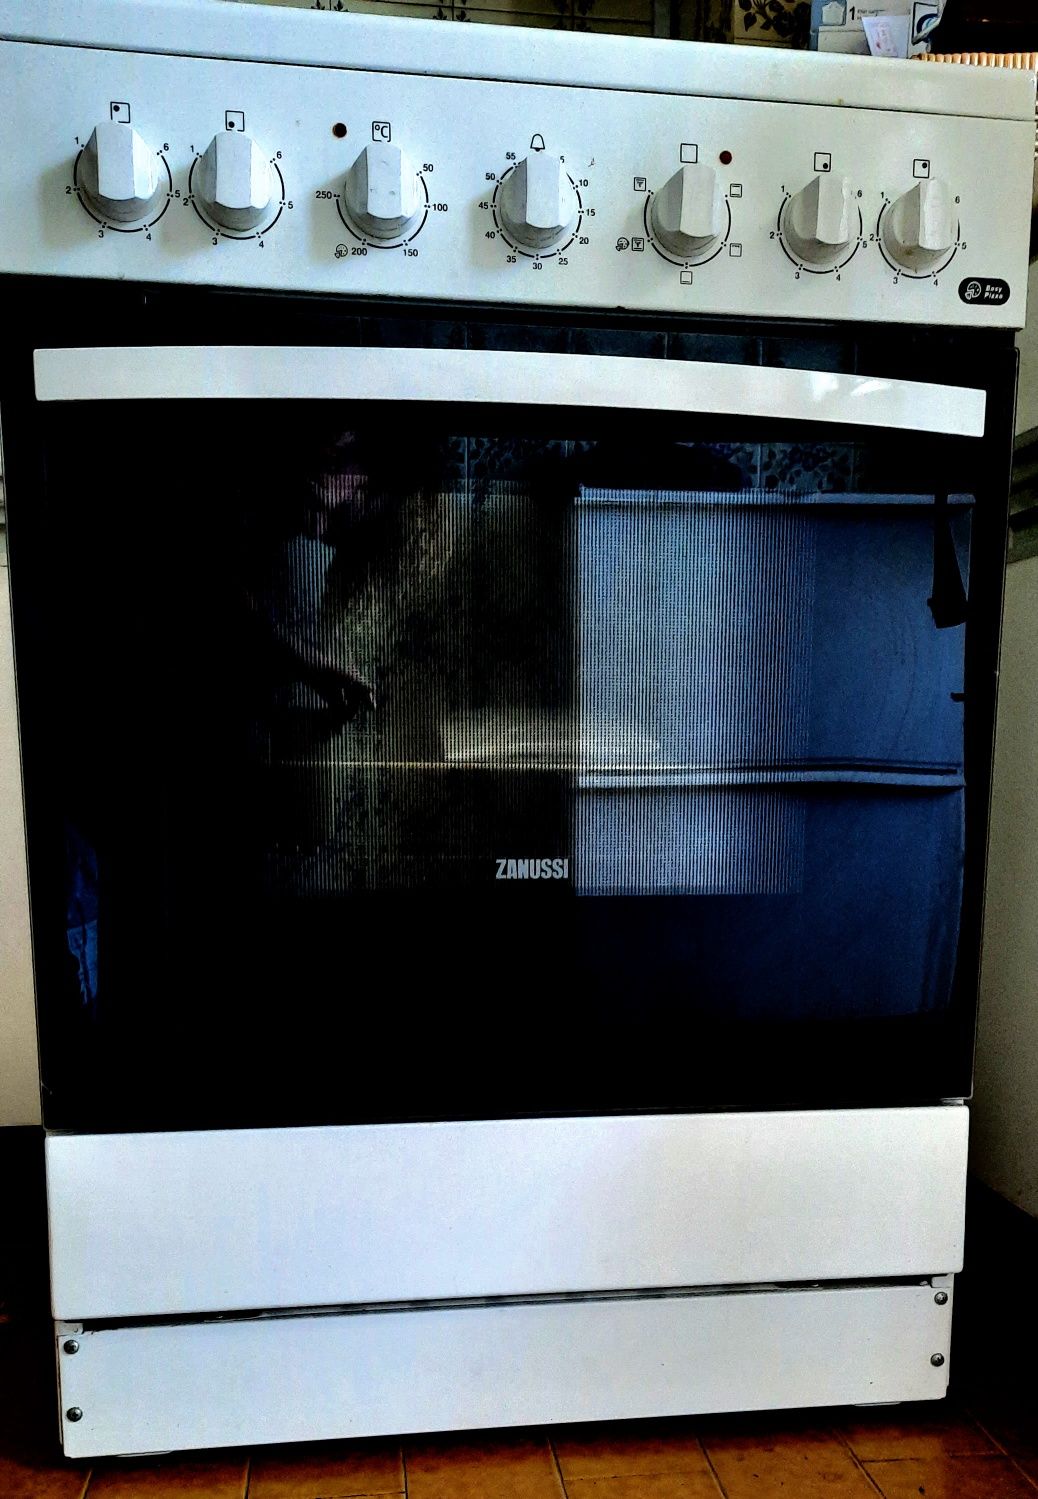 Fogão Zanussi com placa vitroceramica e forno com ventoinha turbo